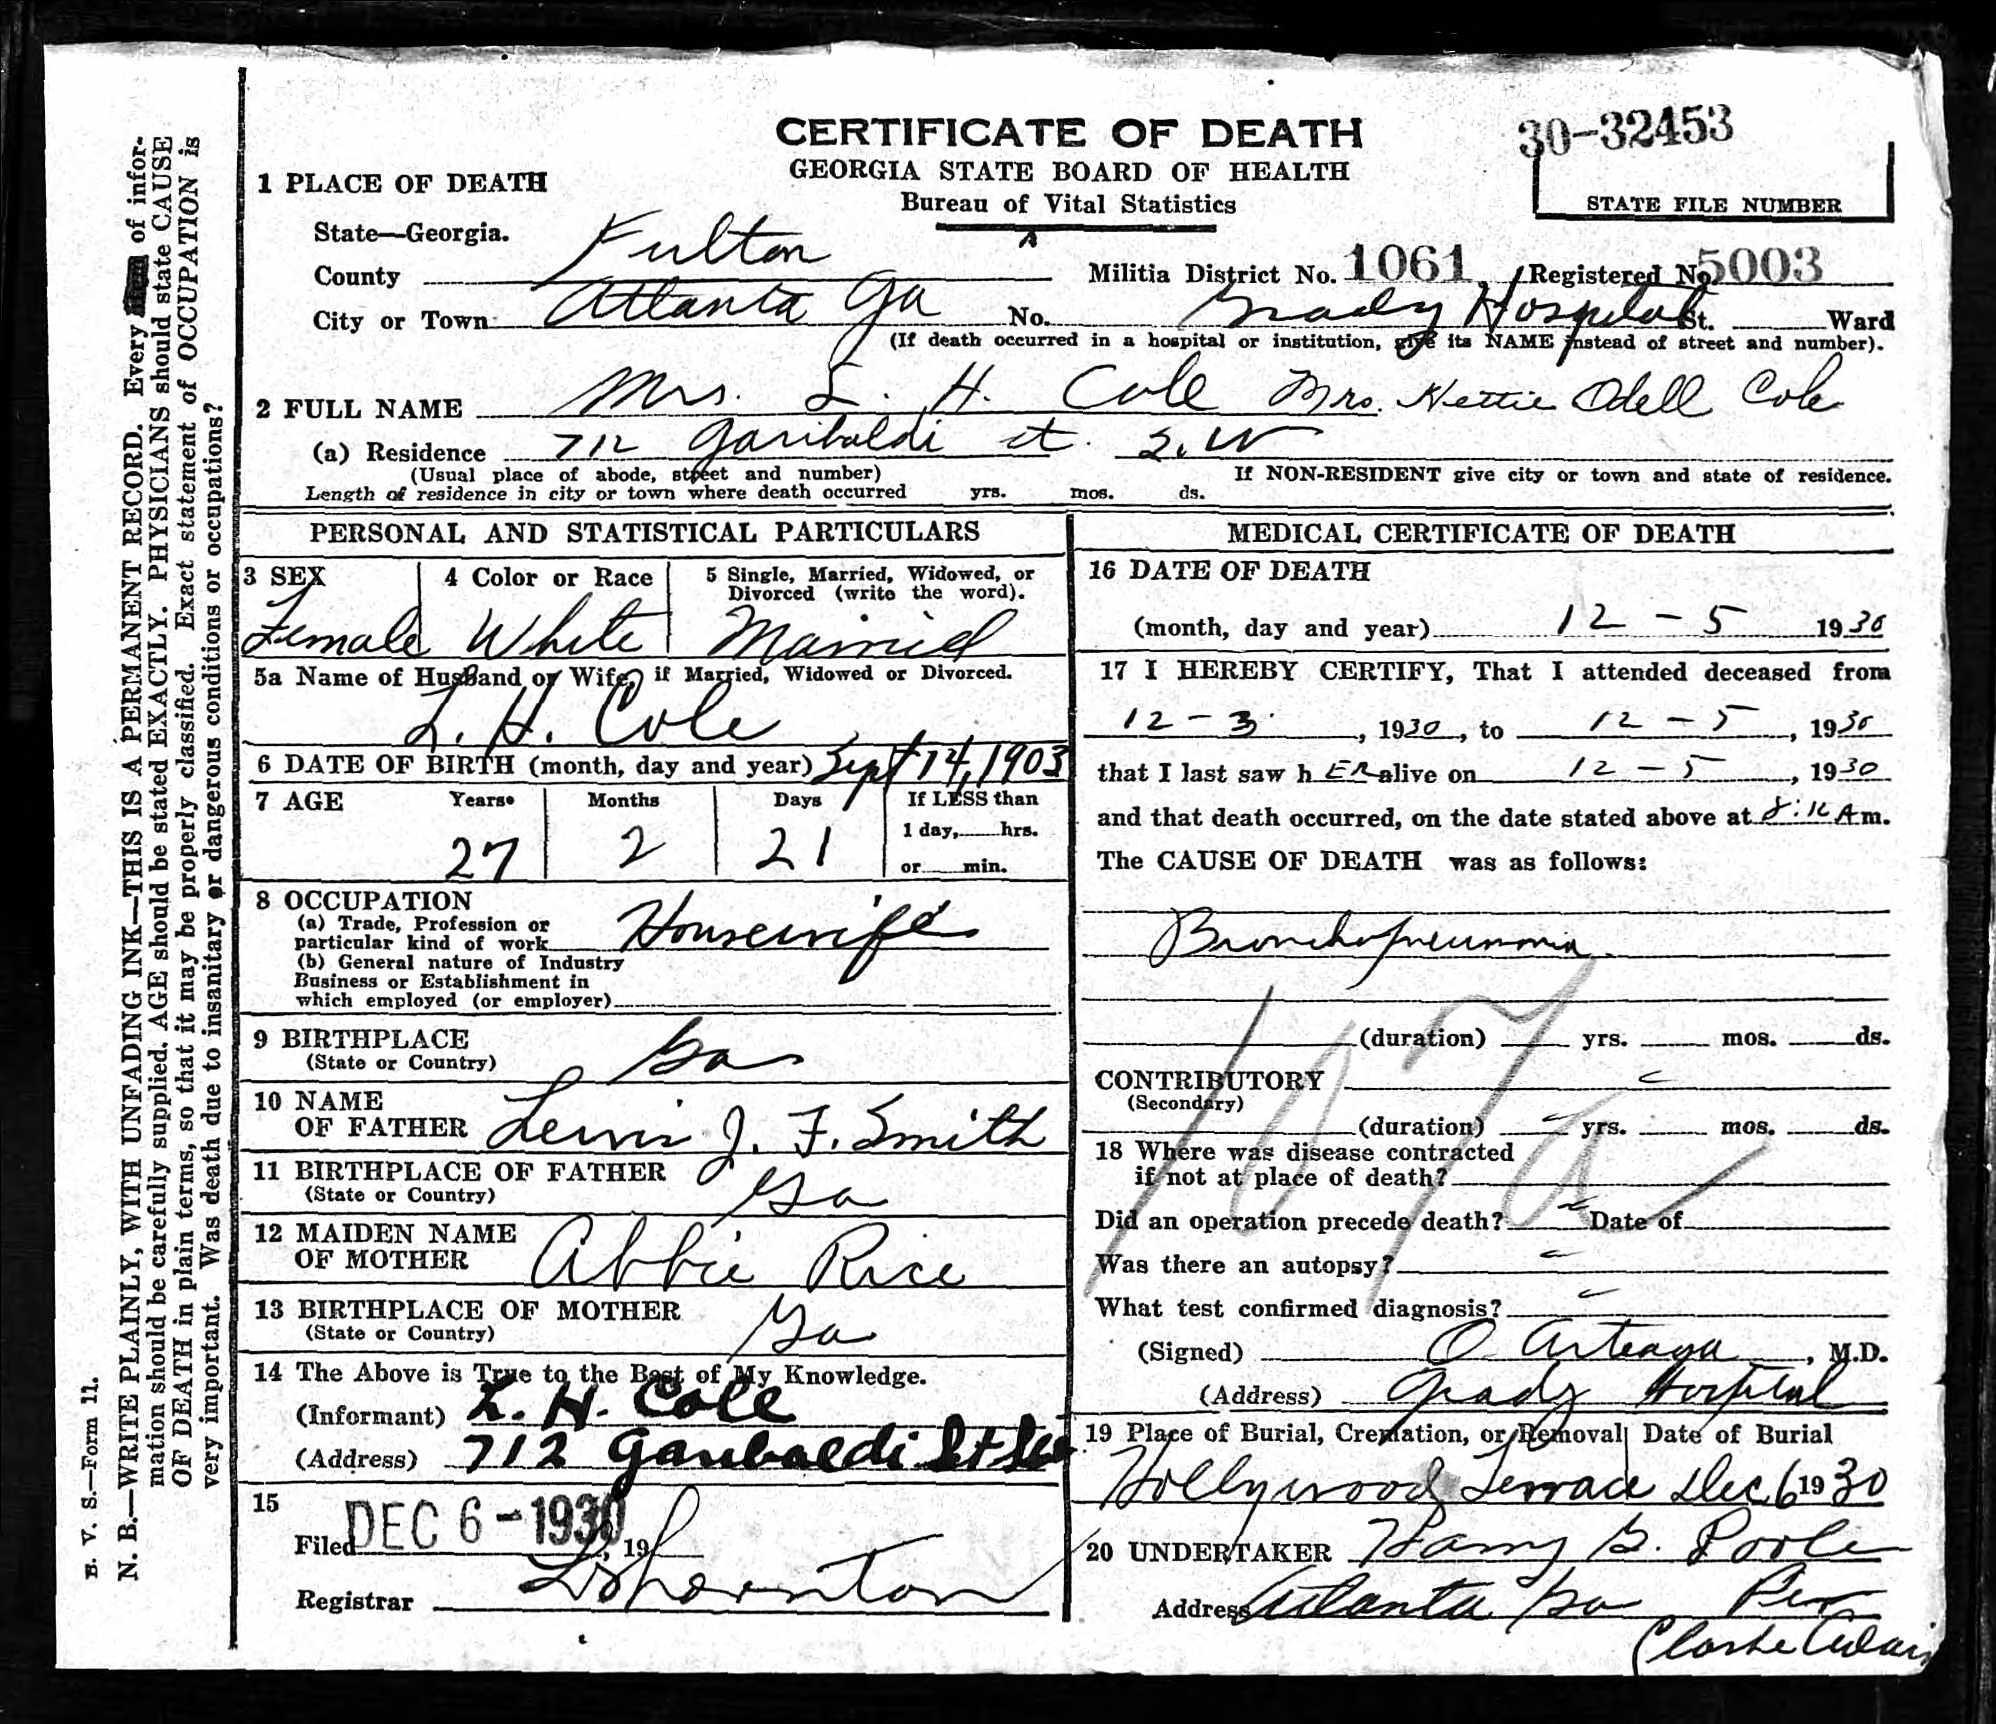 Hettie Odell Cole’s 1930 Death Certificate